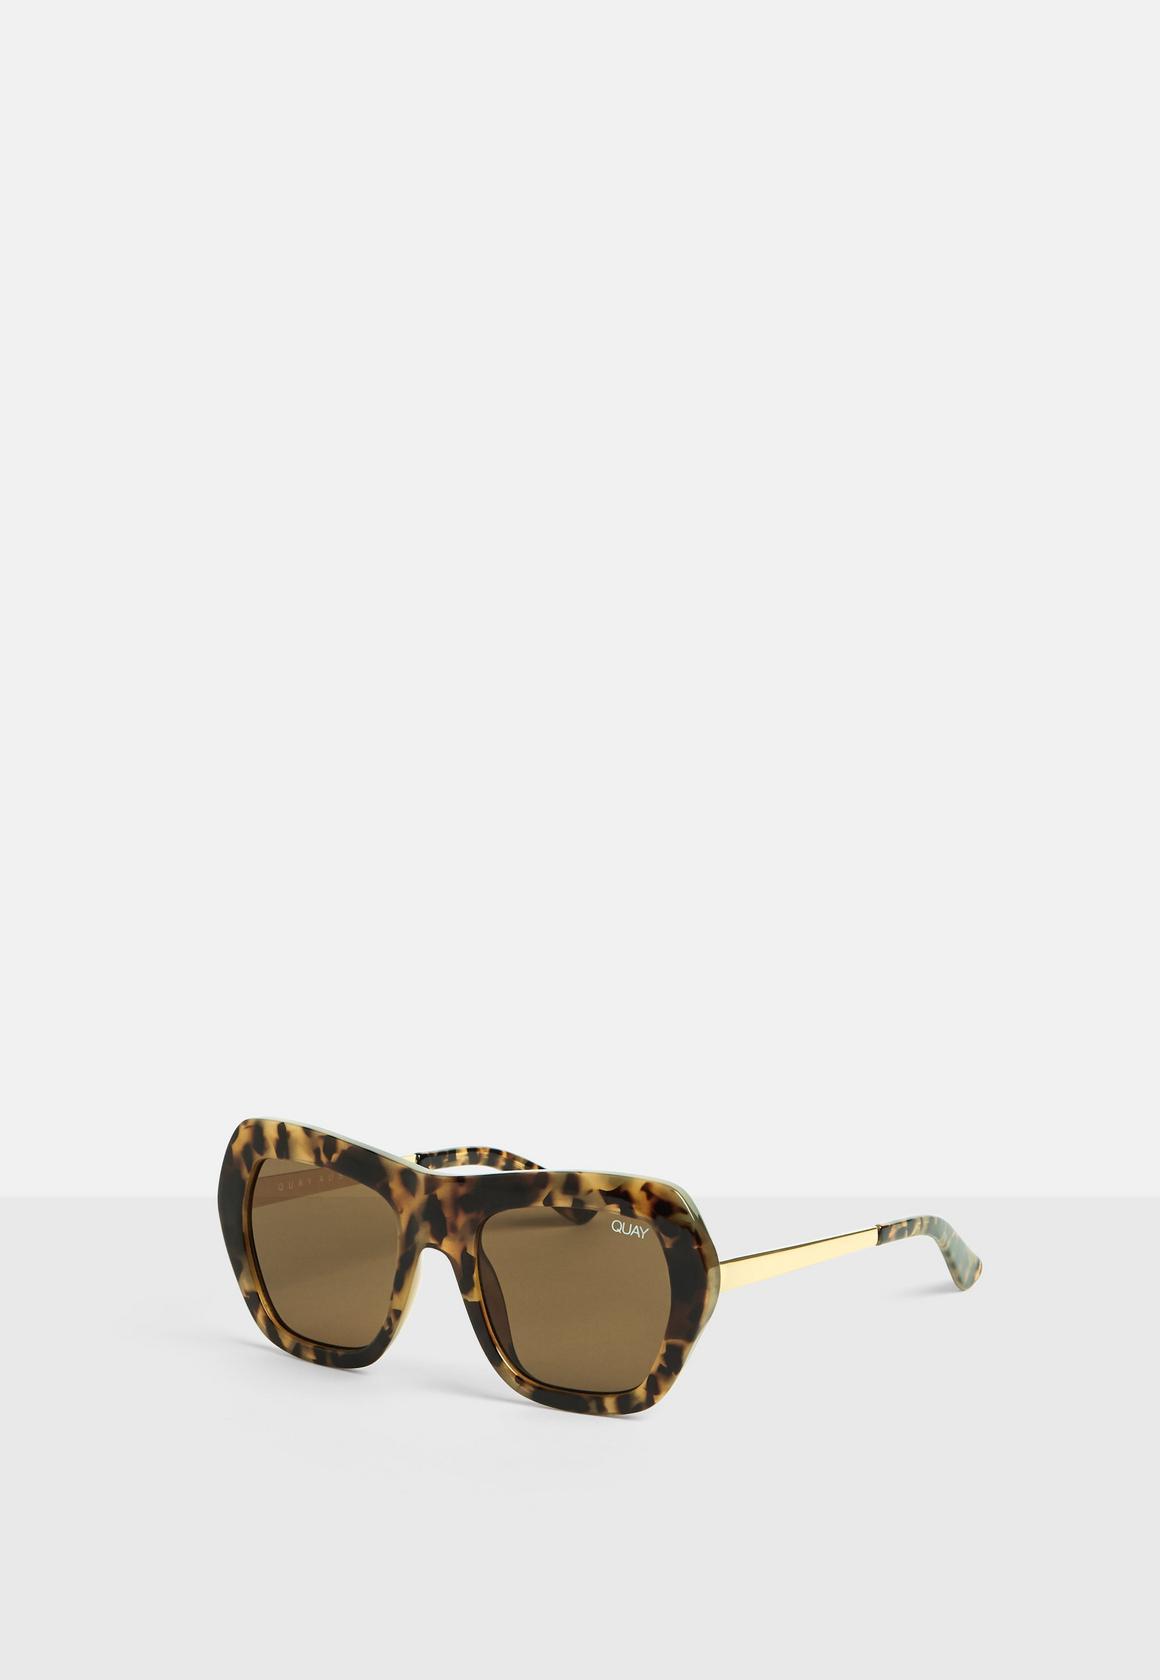 Black common love sunglasses